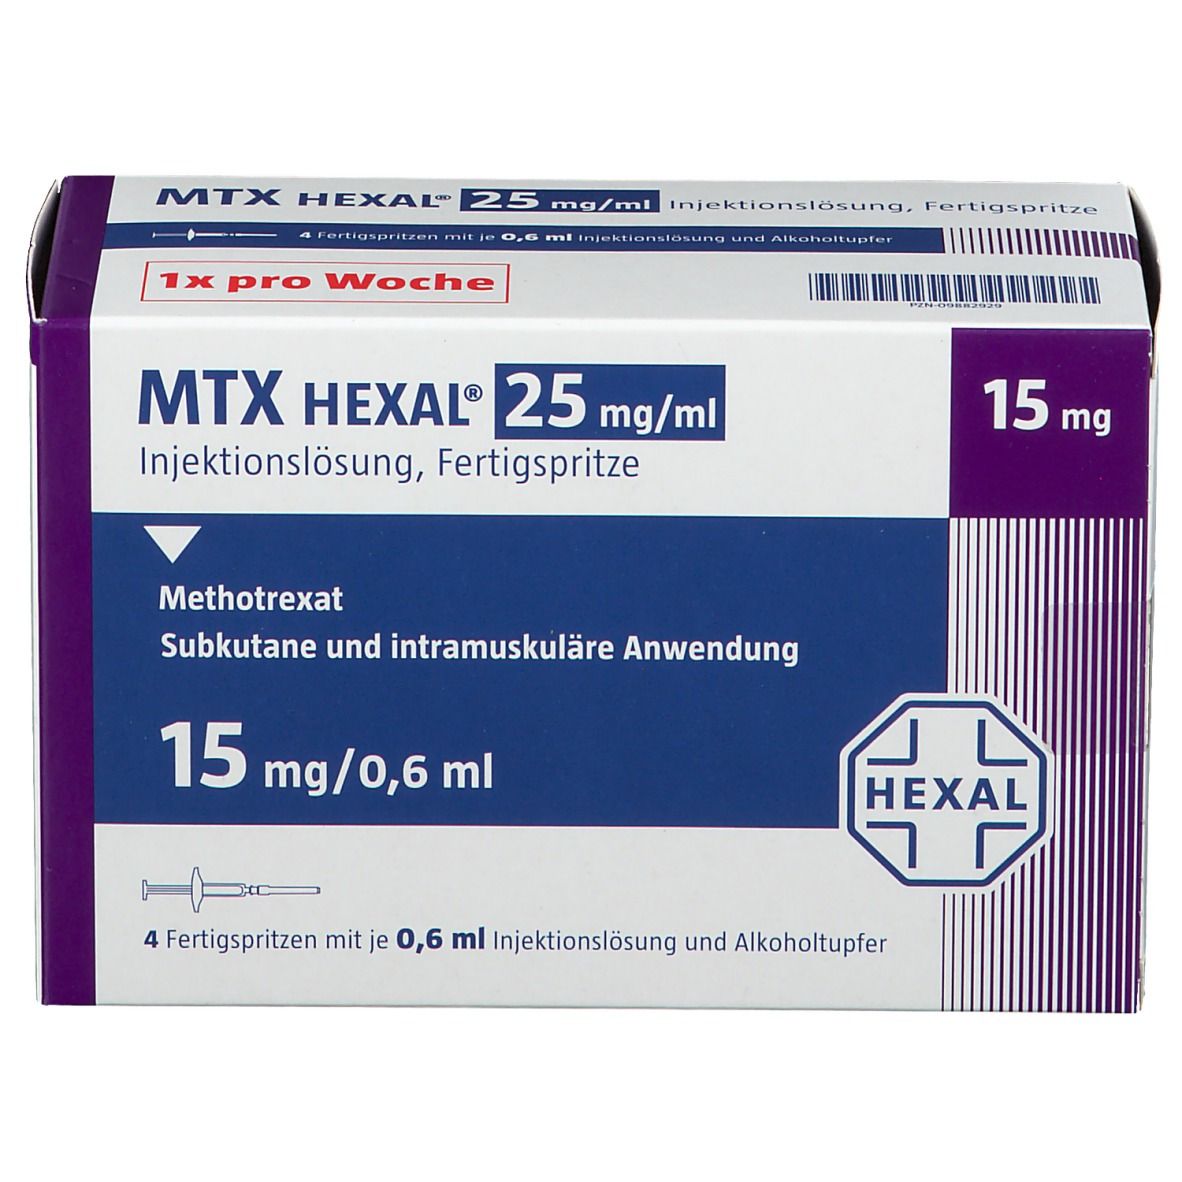 MTX HEXAL® 25 mg/ml